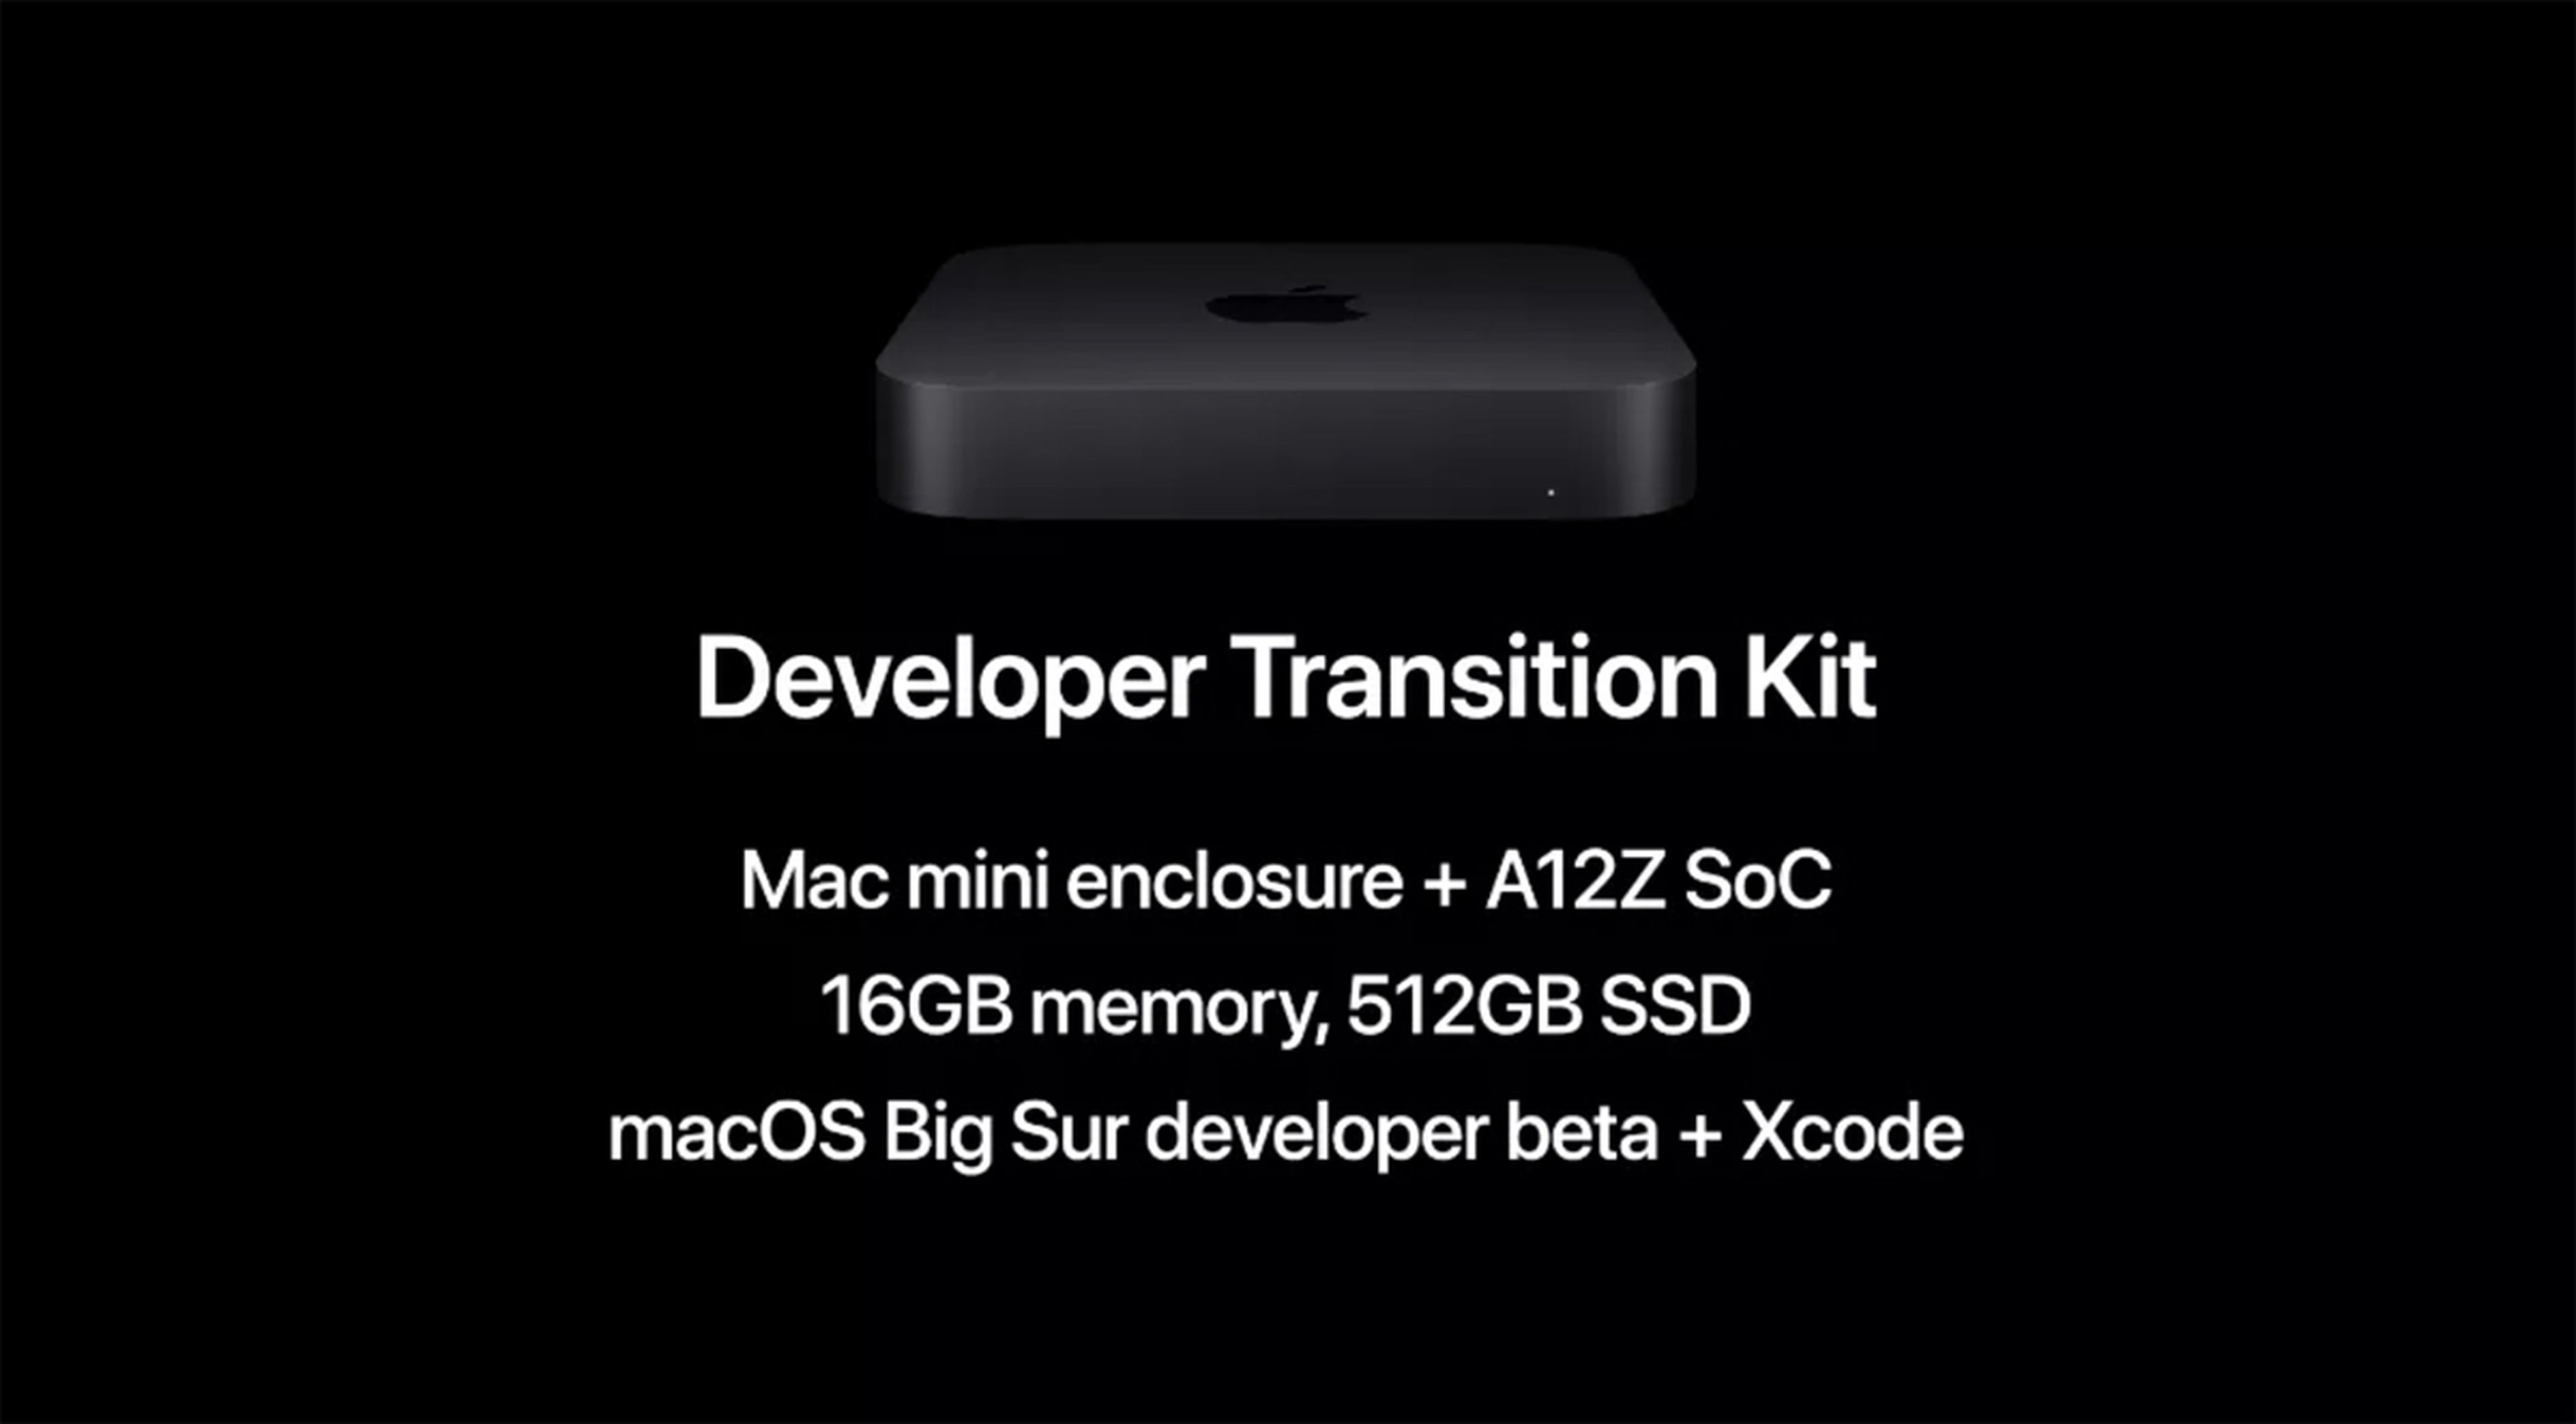 Apple Developer Transition Kit